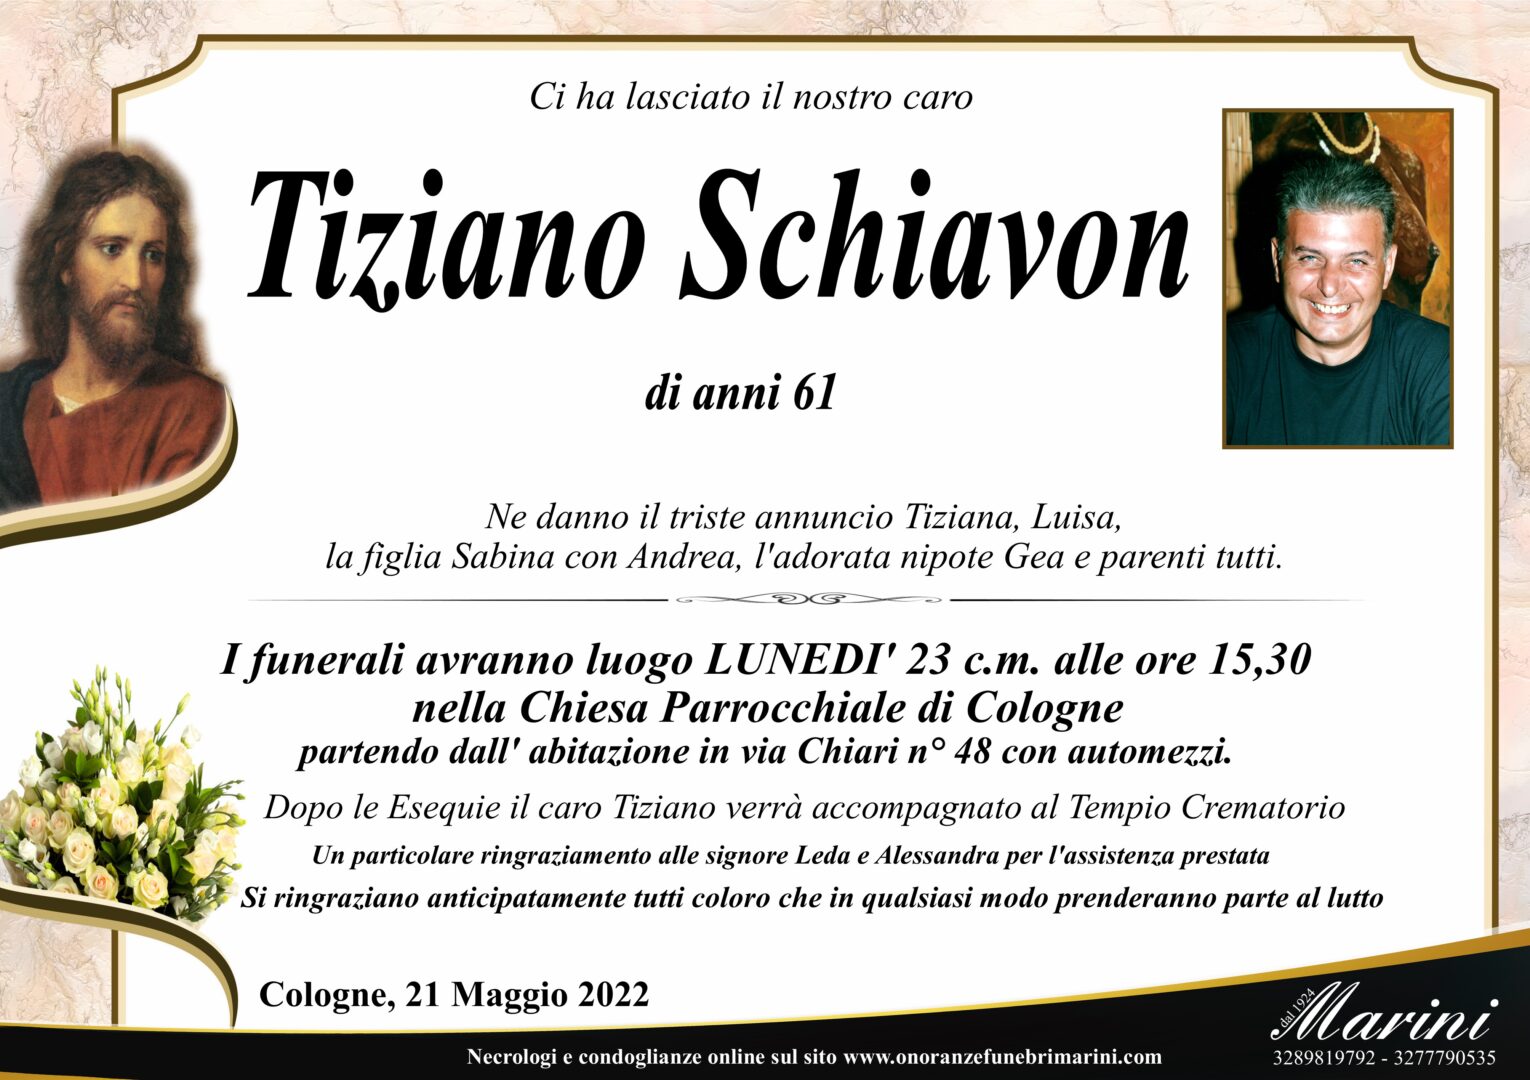 Tiziano Schiavon